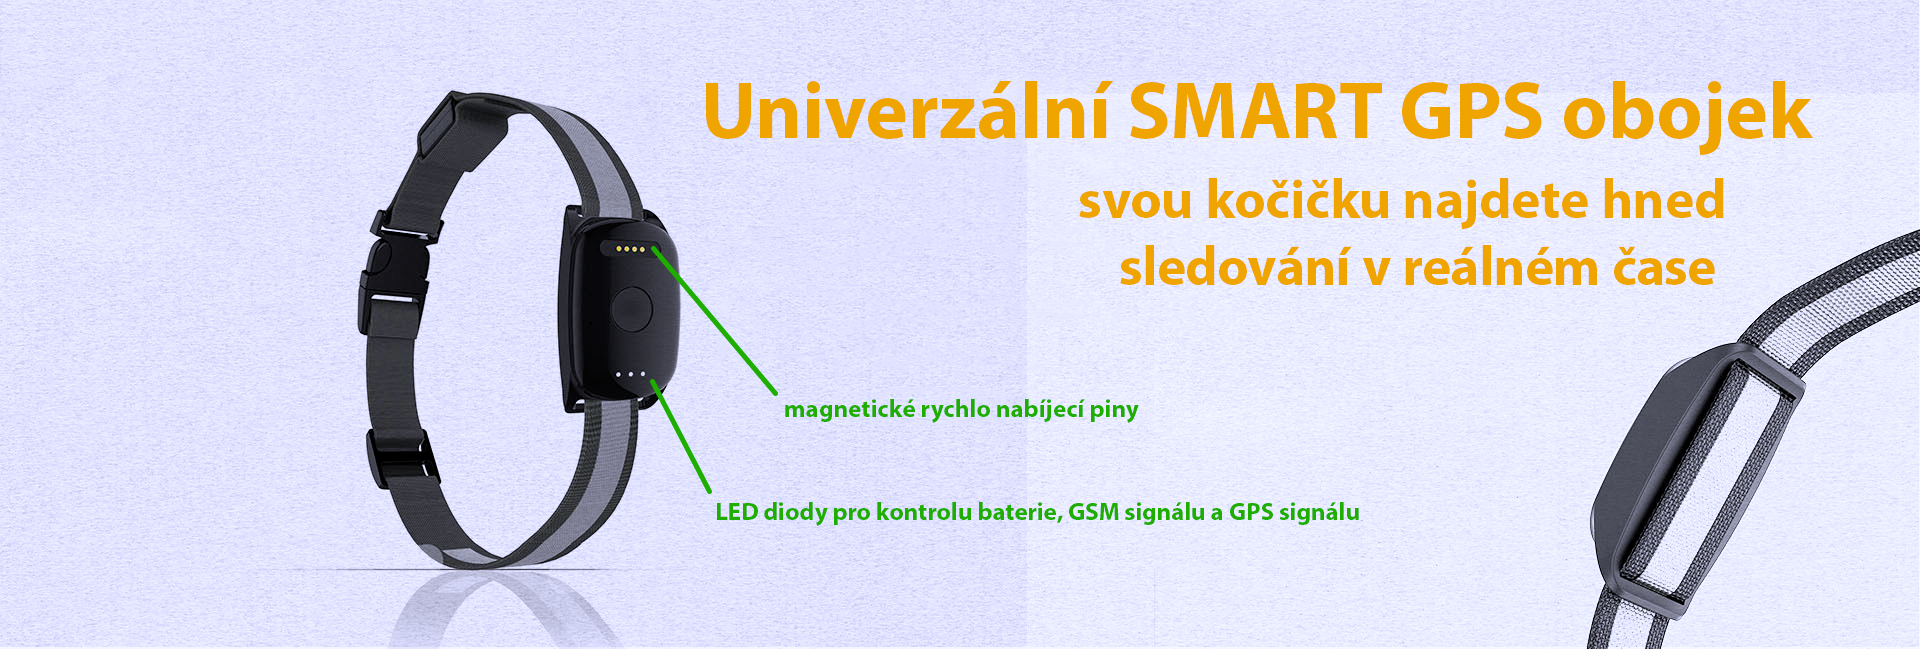 slide univerzalni obojek GPS pro kocky a psy